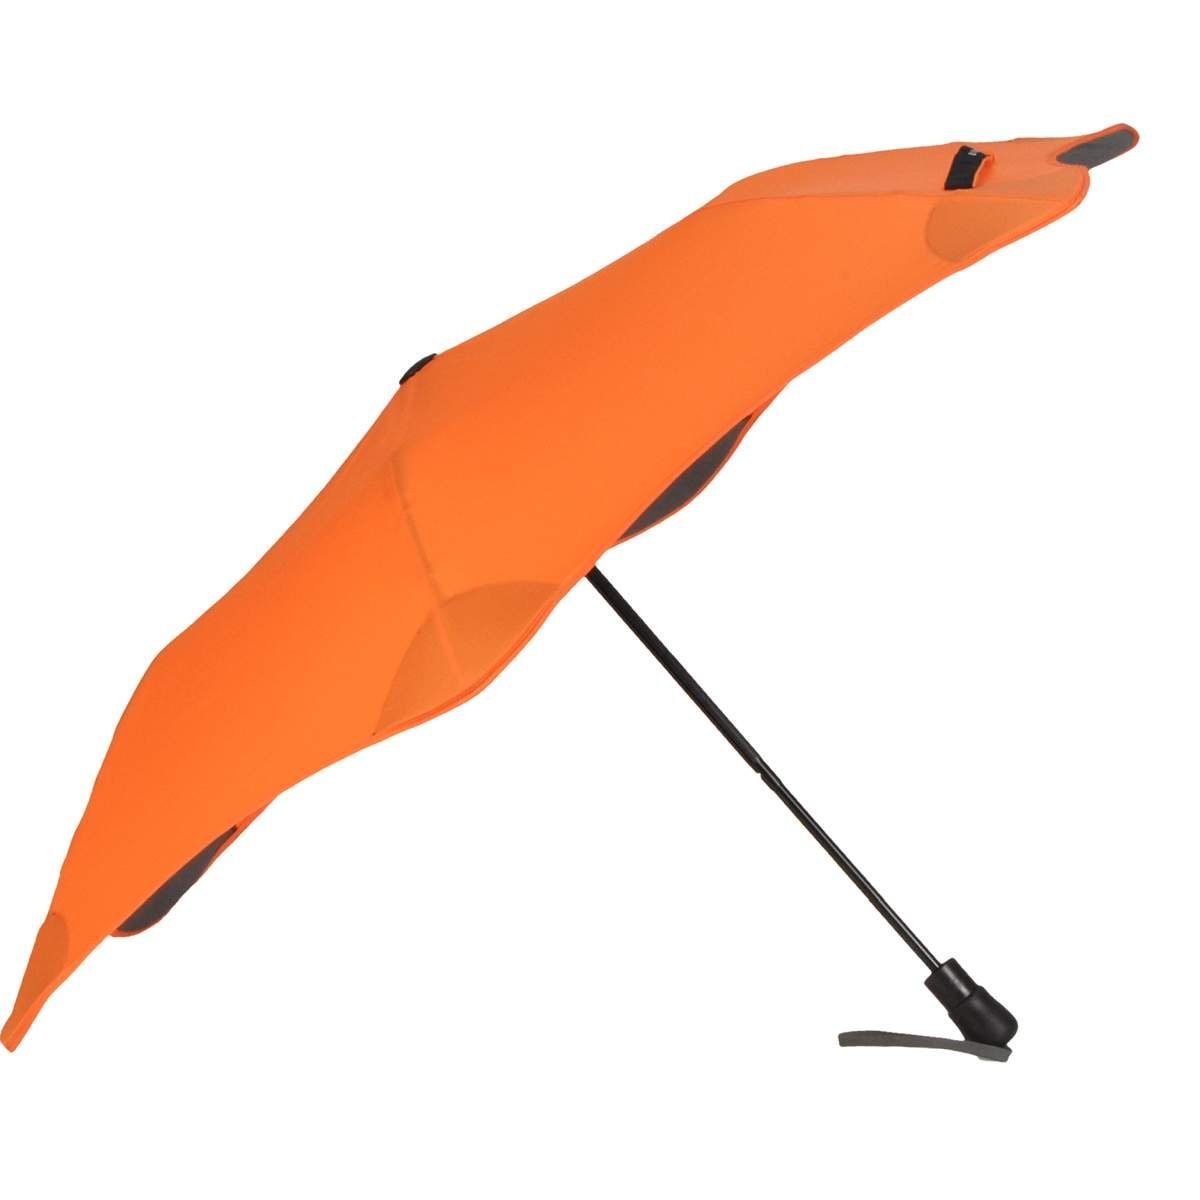 Blunt Taschenregenschirm Metro, Regenschirm, Taschenschirm, für Auto und unterwegs, 96cm Durchmesser orange